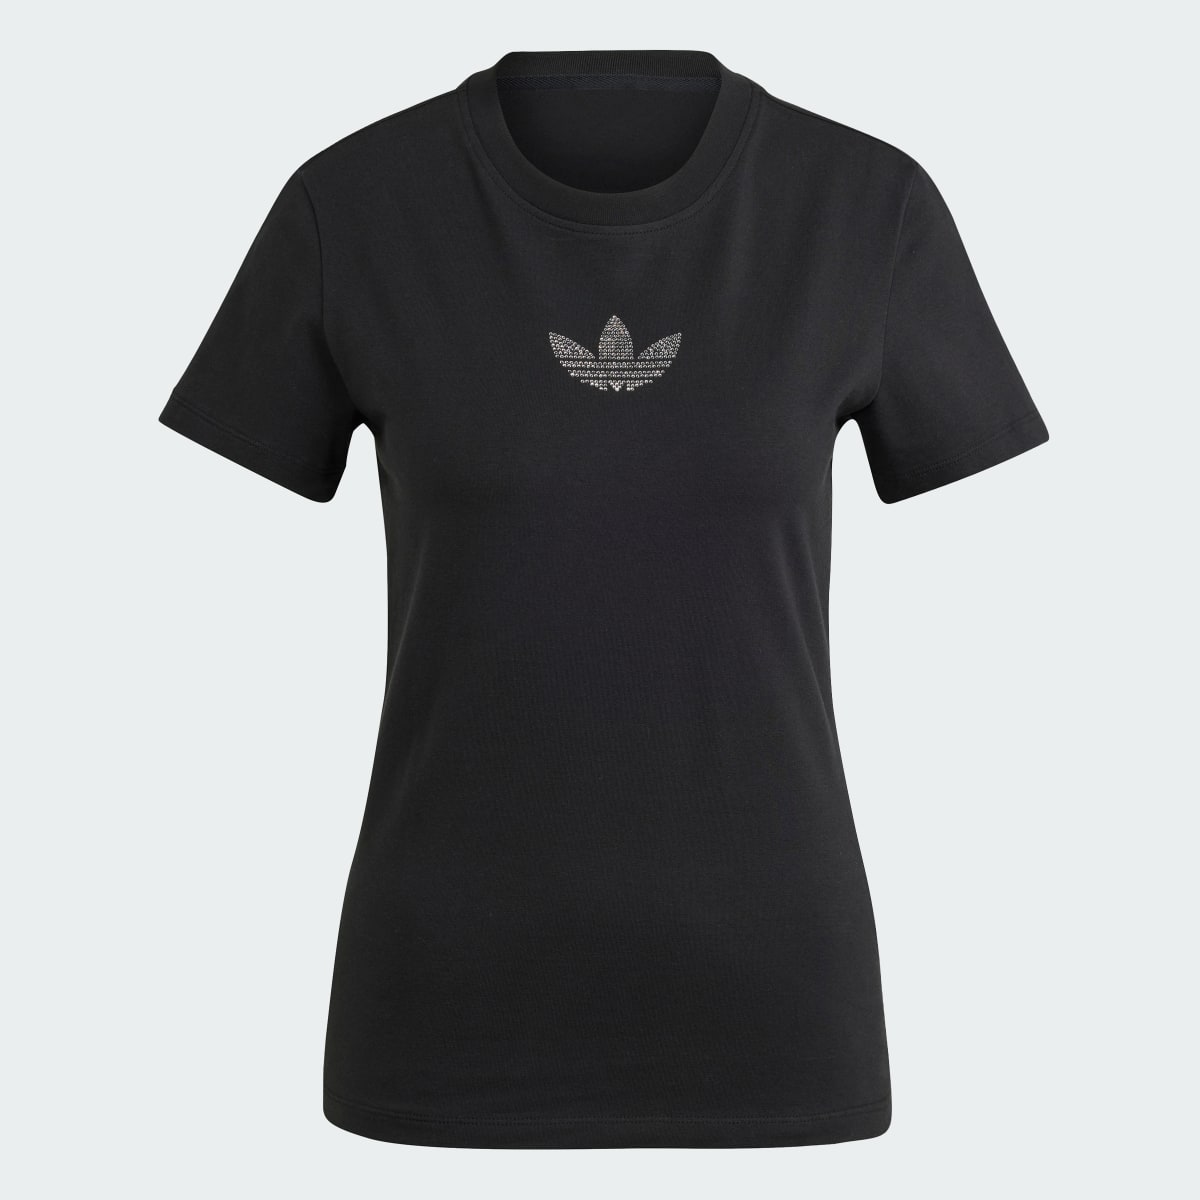 Adidas Premium Essentials T-Shirt. 5